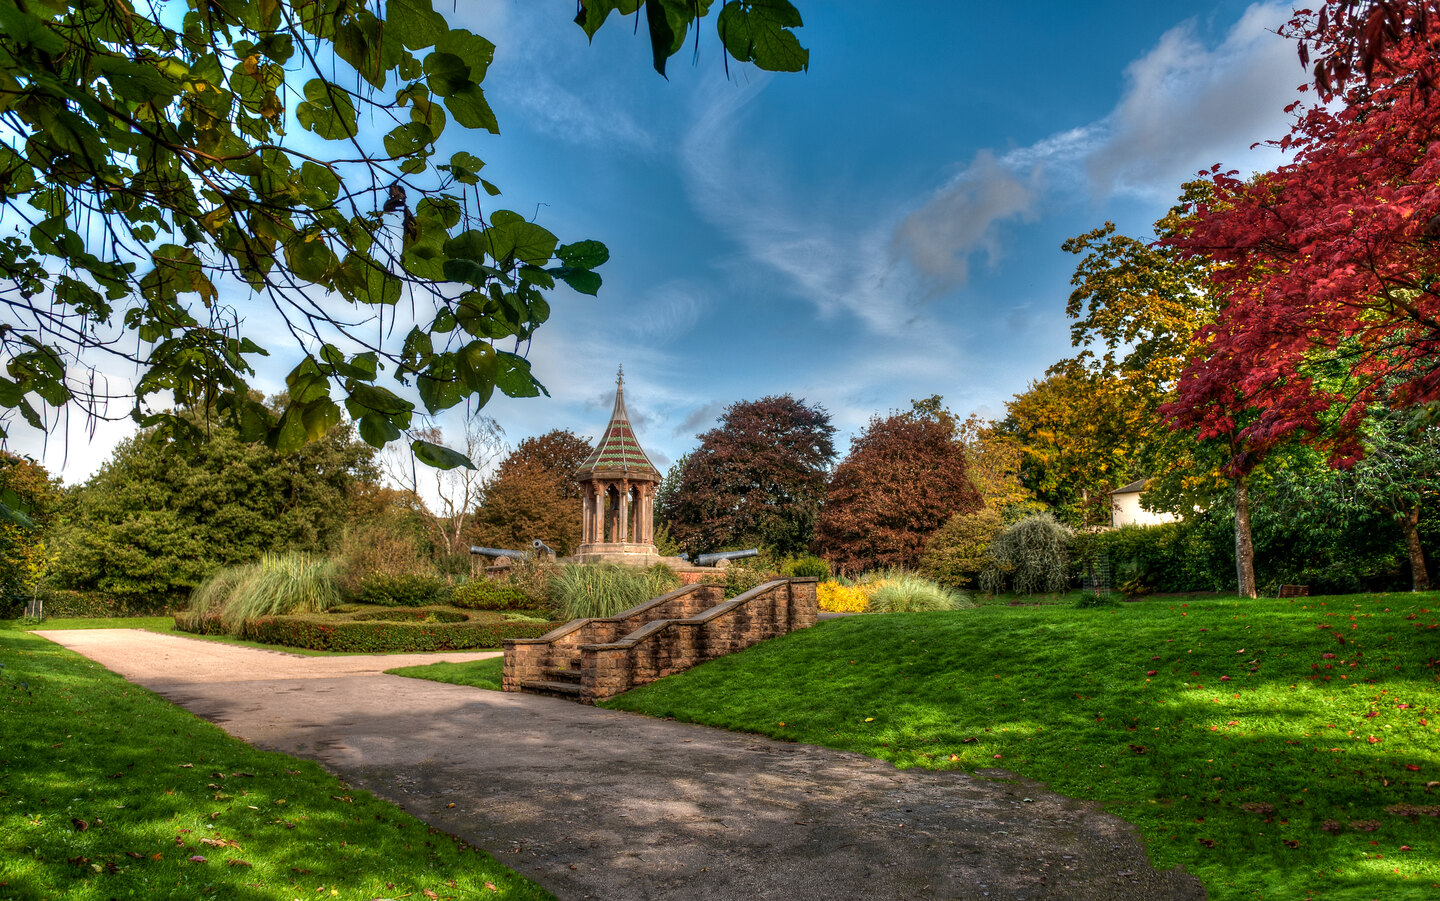 Student Accommodation in Arboretum, Nottingham - The centre of the Arboretum public park